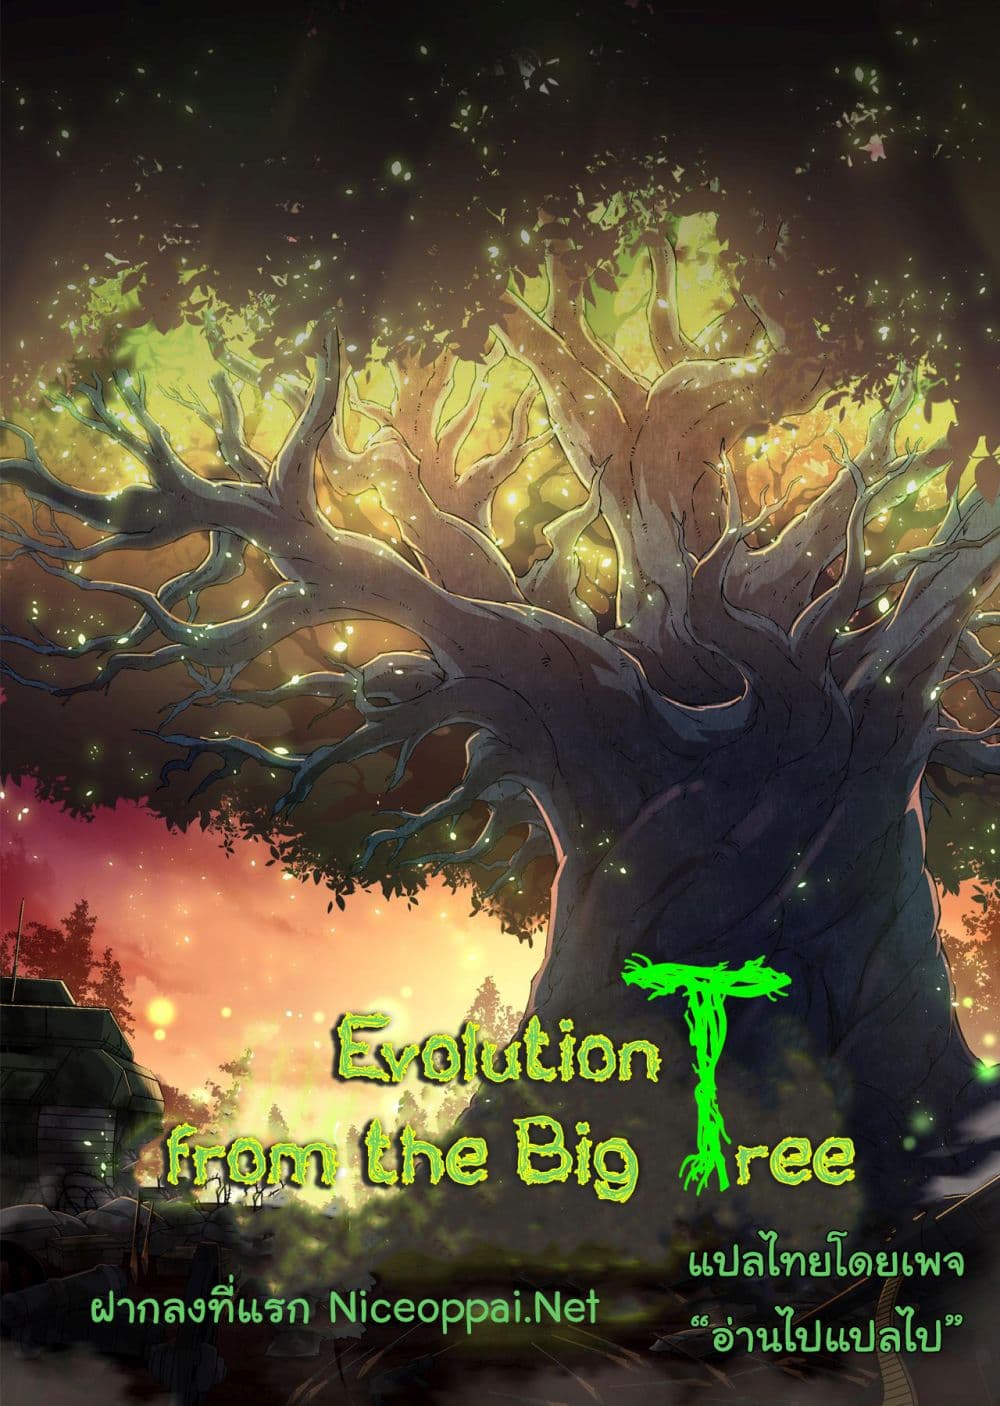 Evolution from the Big Tree Ã Â¸â€¢Ã Â¸Â­Ã Â¸â„¢Ã Â¸â€”Ã Â¸ÂµÃ Â¹Ë† 4 (31)